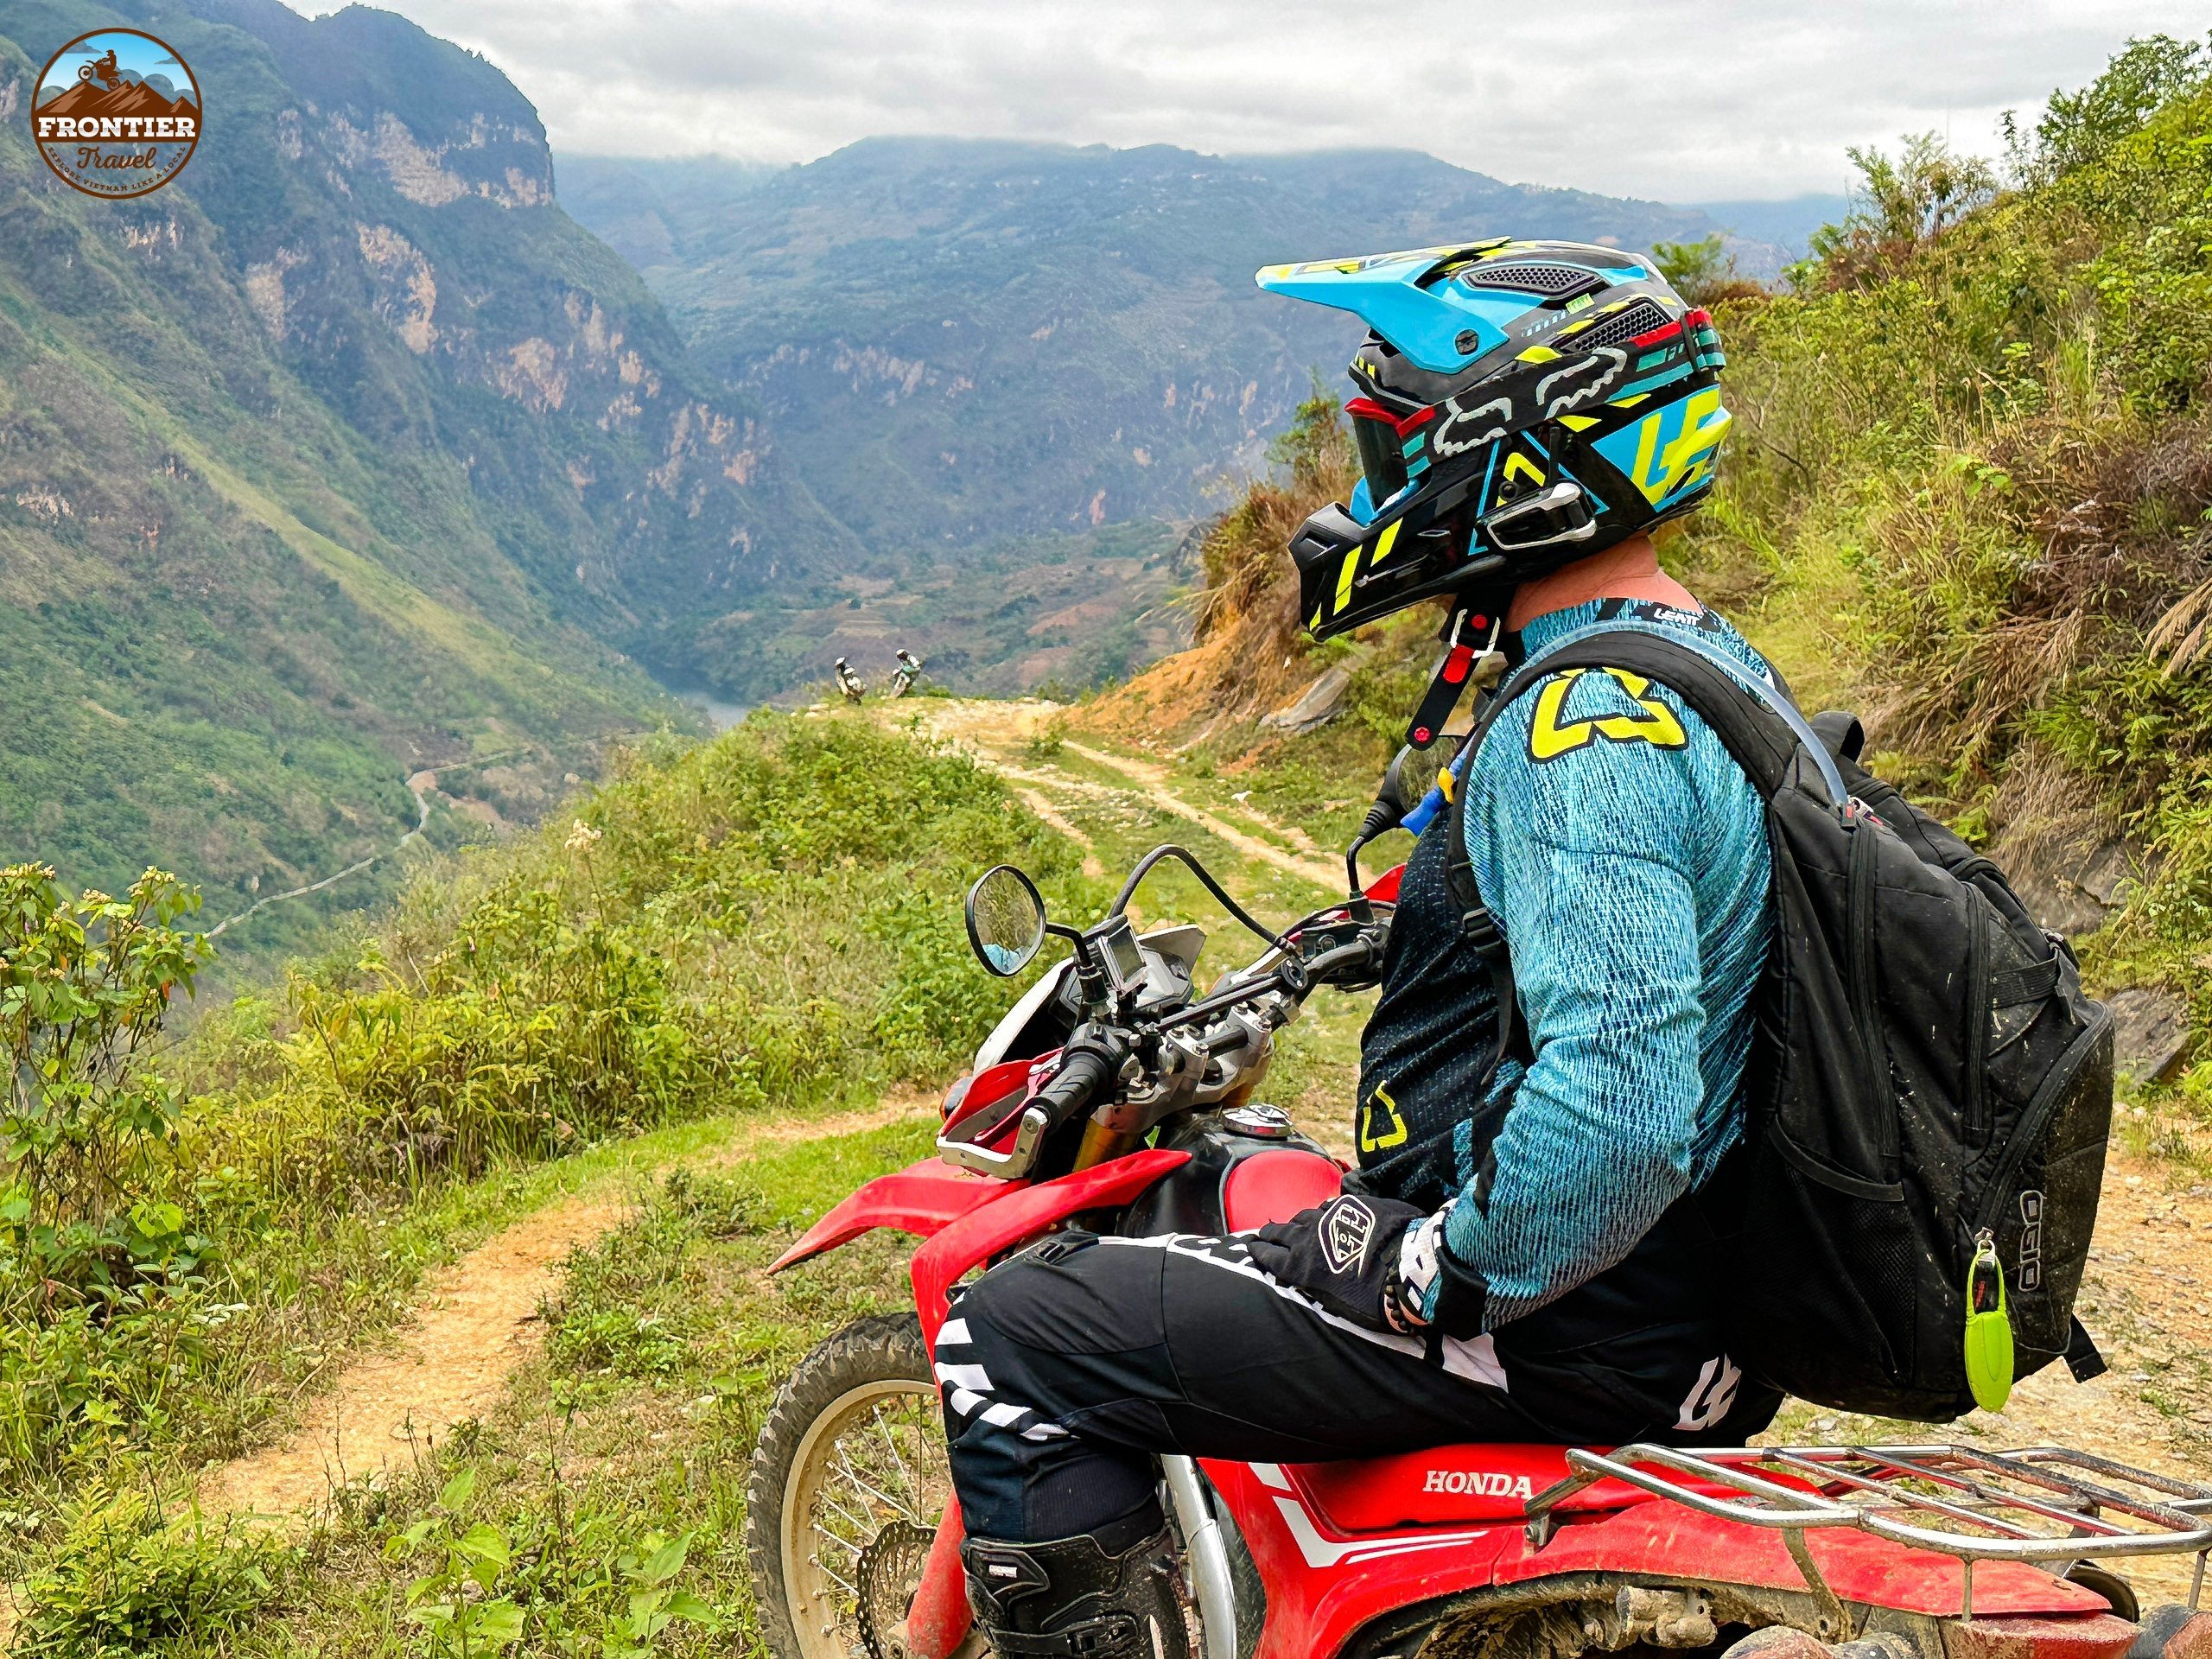 vietnam motorcycle adventure